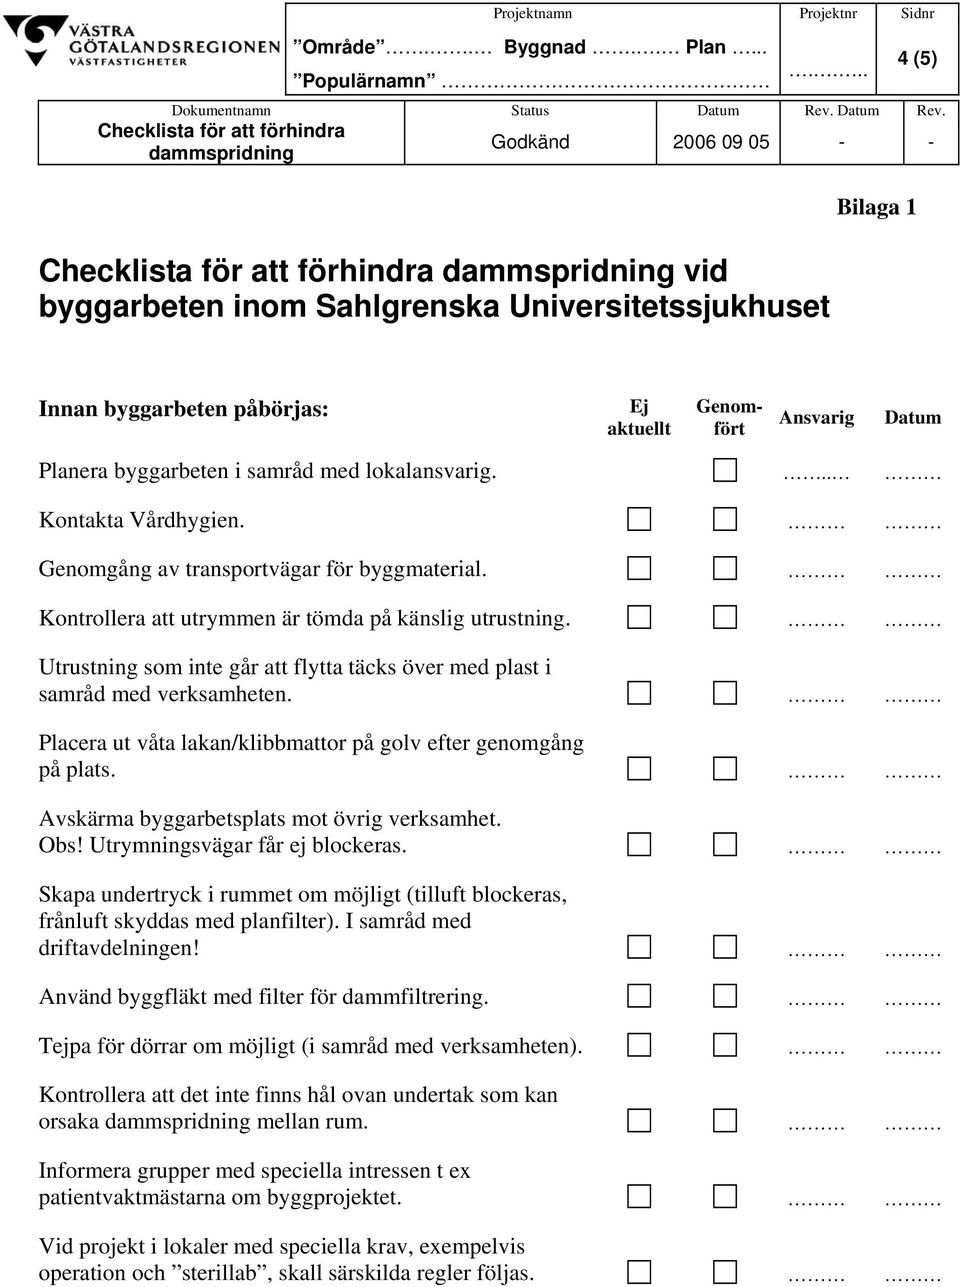 Checklista för att förhindra dammspridning Godkänd 2006 09 05 - - Checklista för att förhindra dammspridning vid byggarbeten inom Sahlgrenska Universitetssjukhuset Bilaga 1 Innan byggarbeten